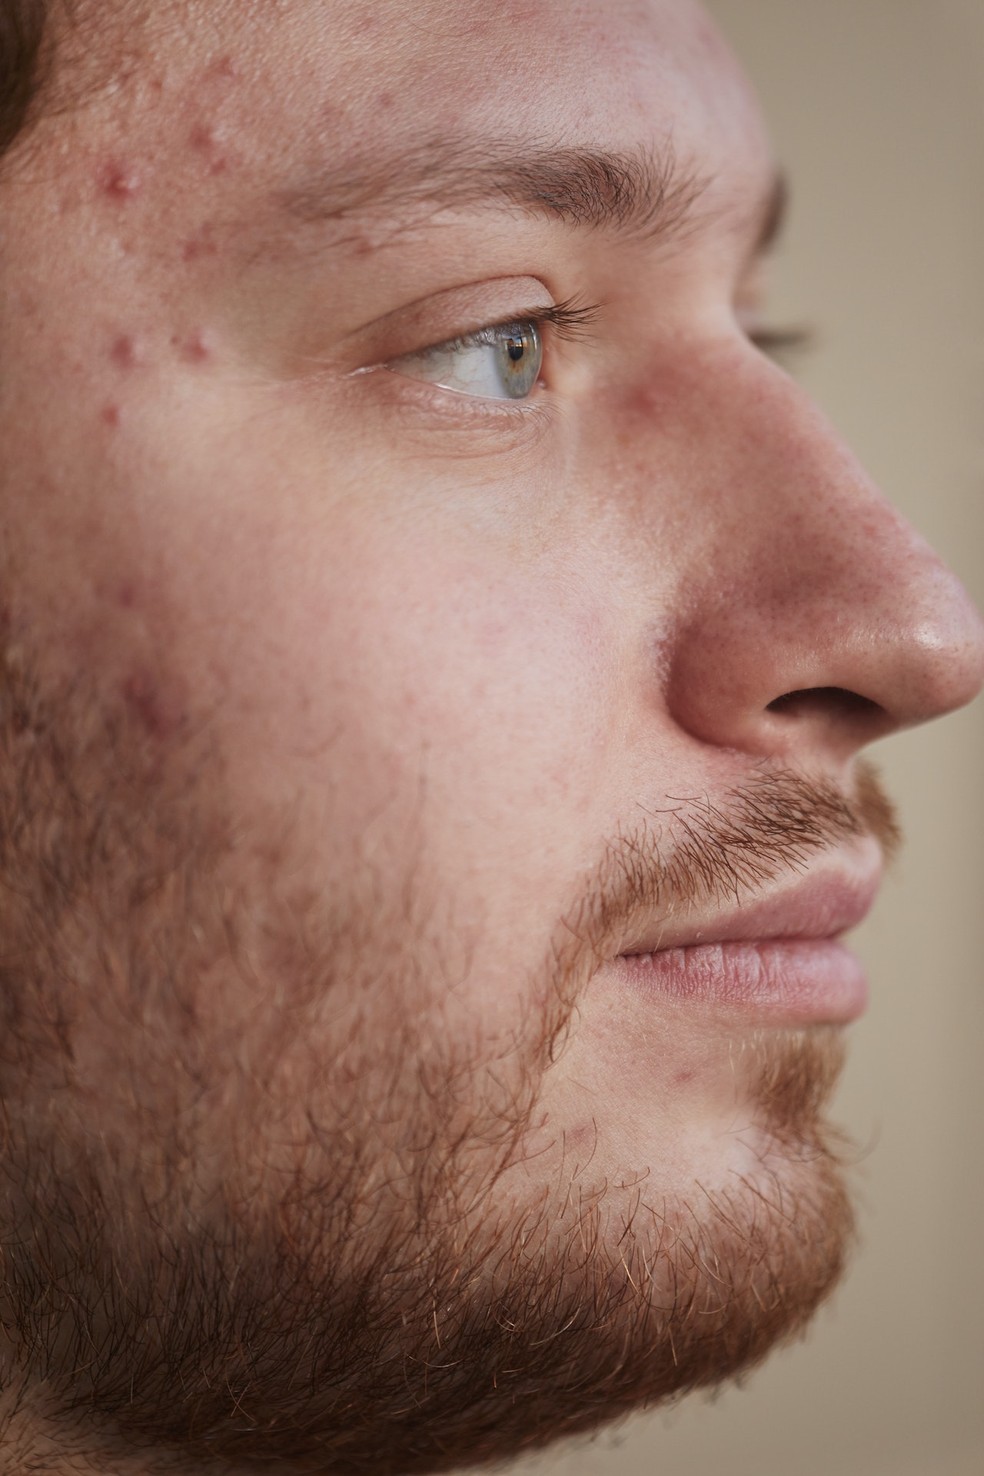 Em alguns casos, a acne pode vir acompanhada de vermelhidão e irritação da pele. — Foto: Reprodução/Pexels